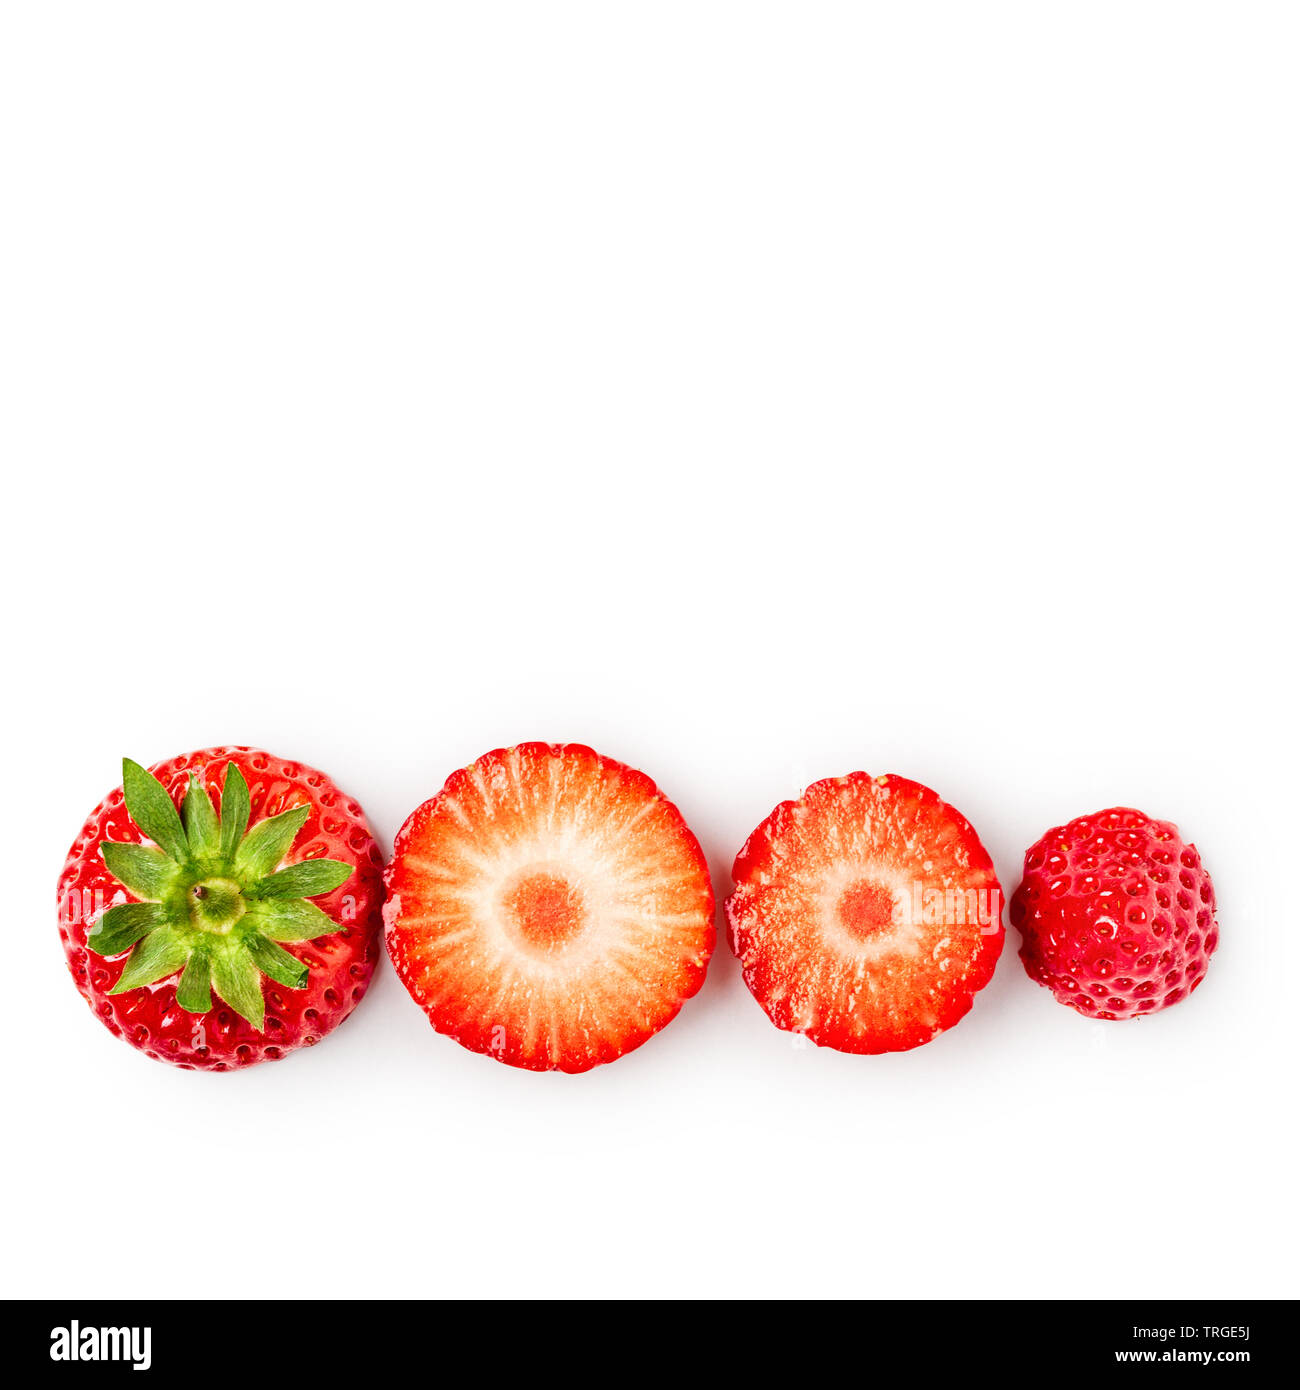 Coupes de fraises fraîches isolées sur fond blanc avec chemin de détourage. La saine alimentation et les régimes amaigrissants concept. Spring fruits et de baies. Objet unique, Banque D'Images